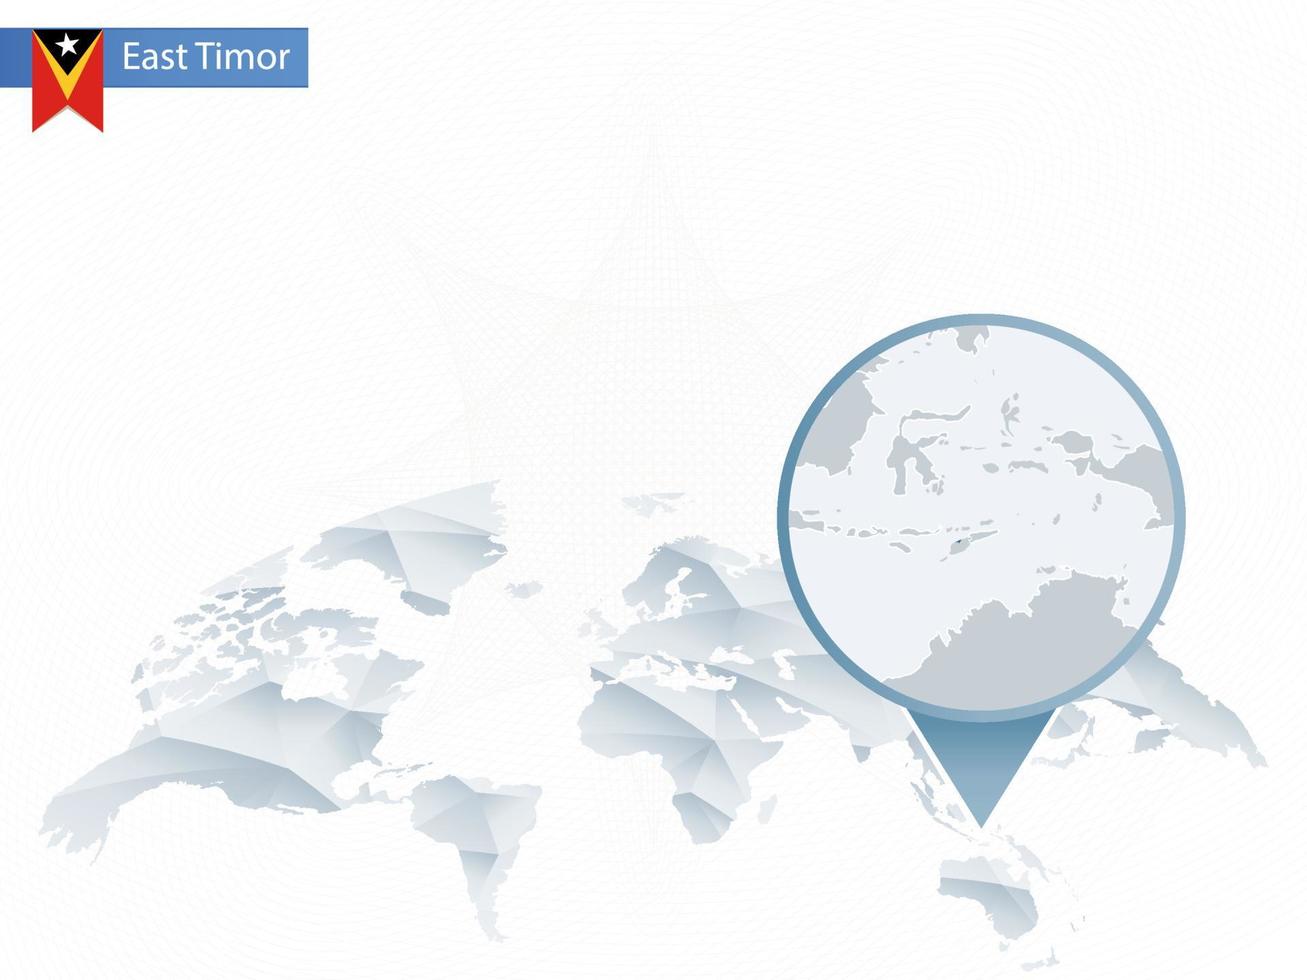 carte du monde arrondie abstraite avec carte détaillée du timor oriental épinglée. vecteur